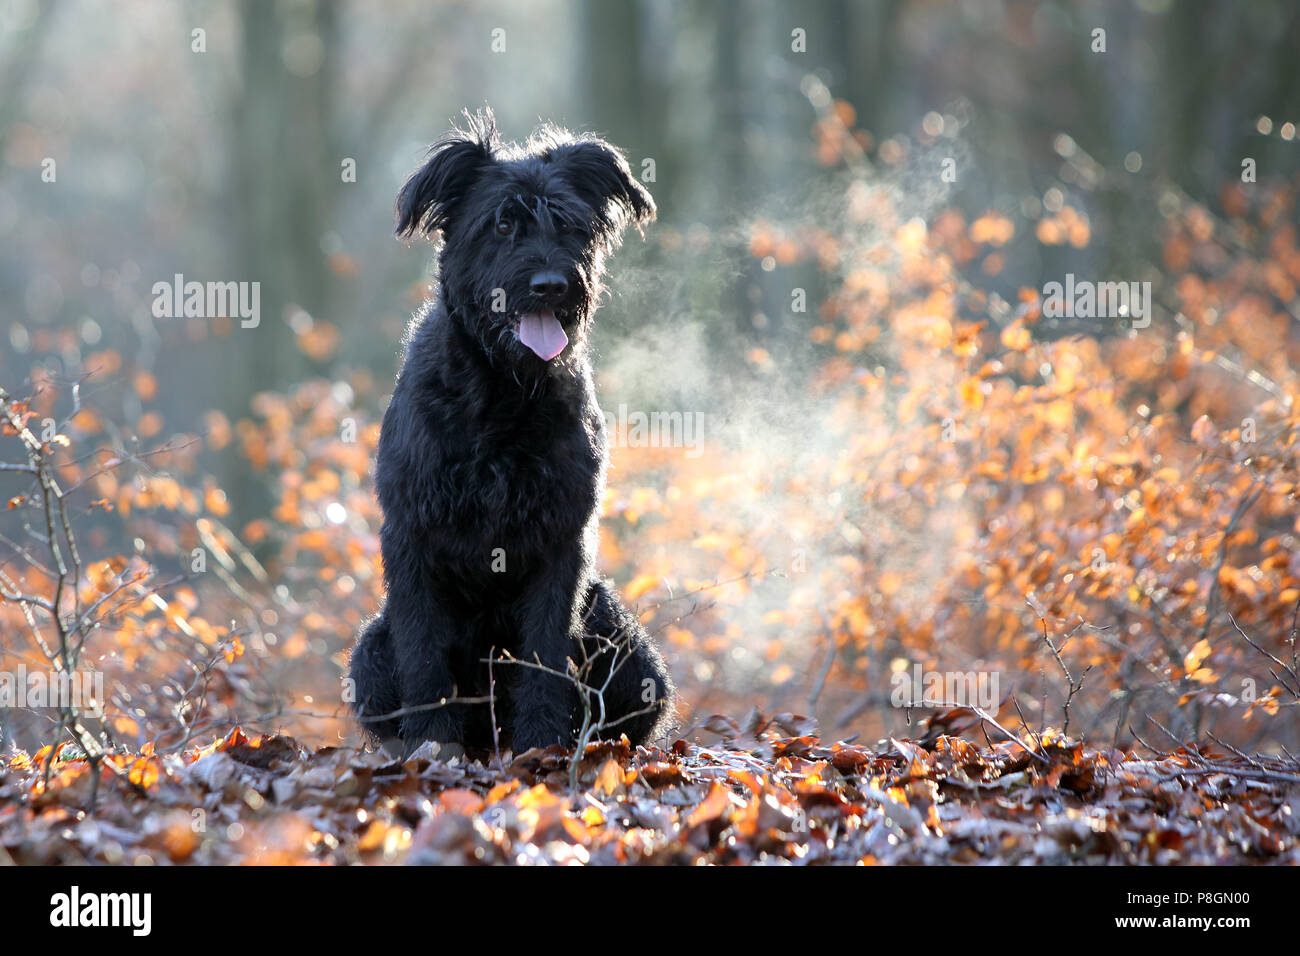 Nueva Kaetwin, Alemania, Schnauzer gigante se sienta jadeando en las maderas en hojas de otoño Foto de stock